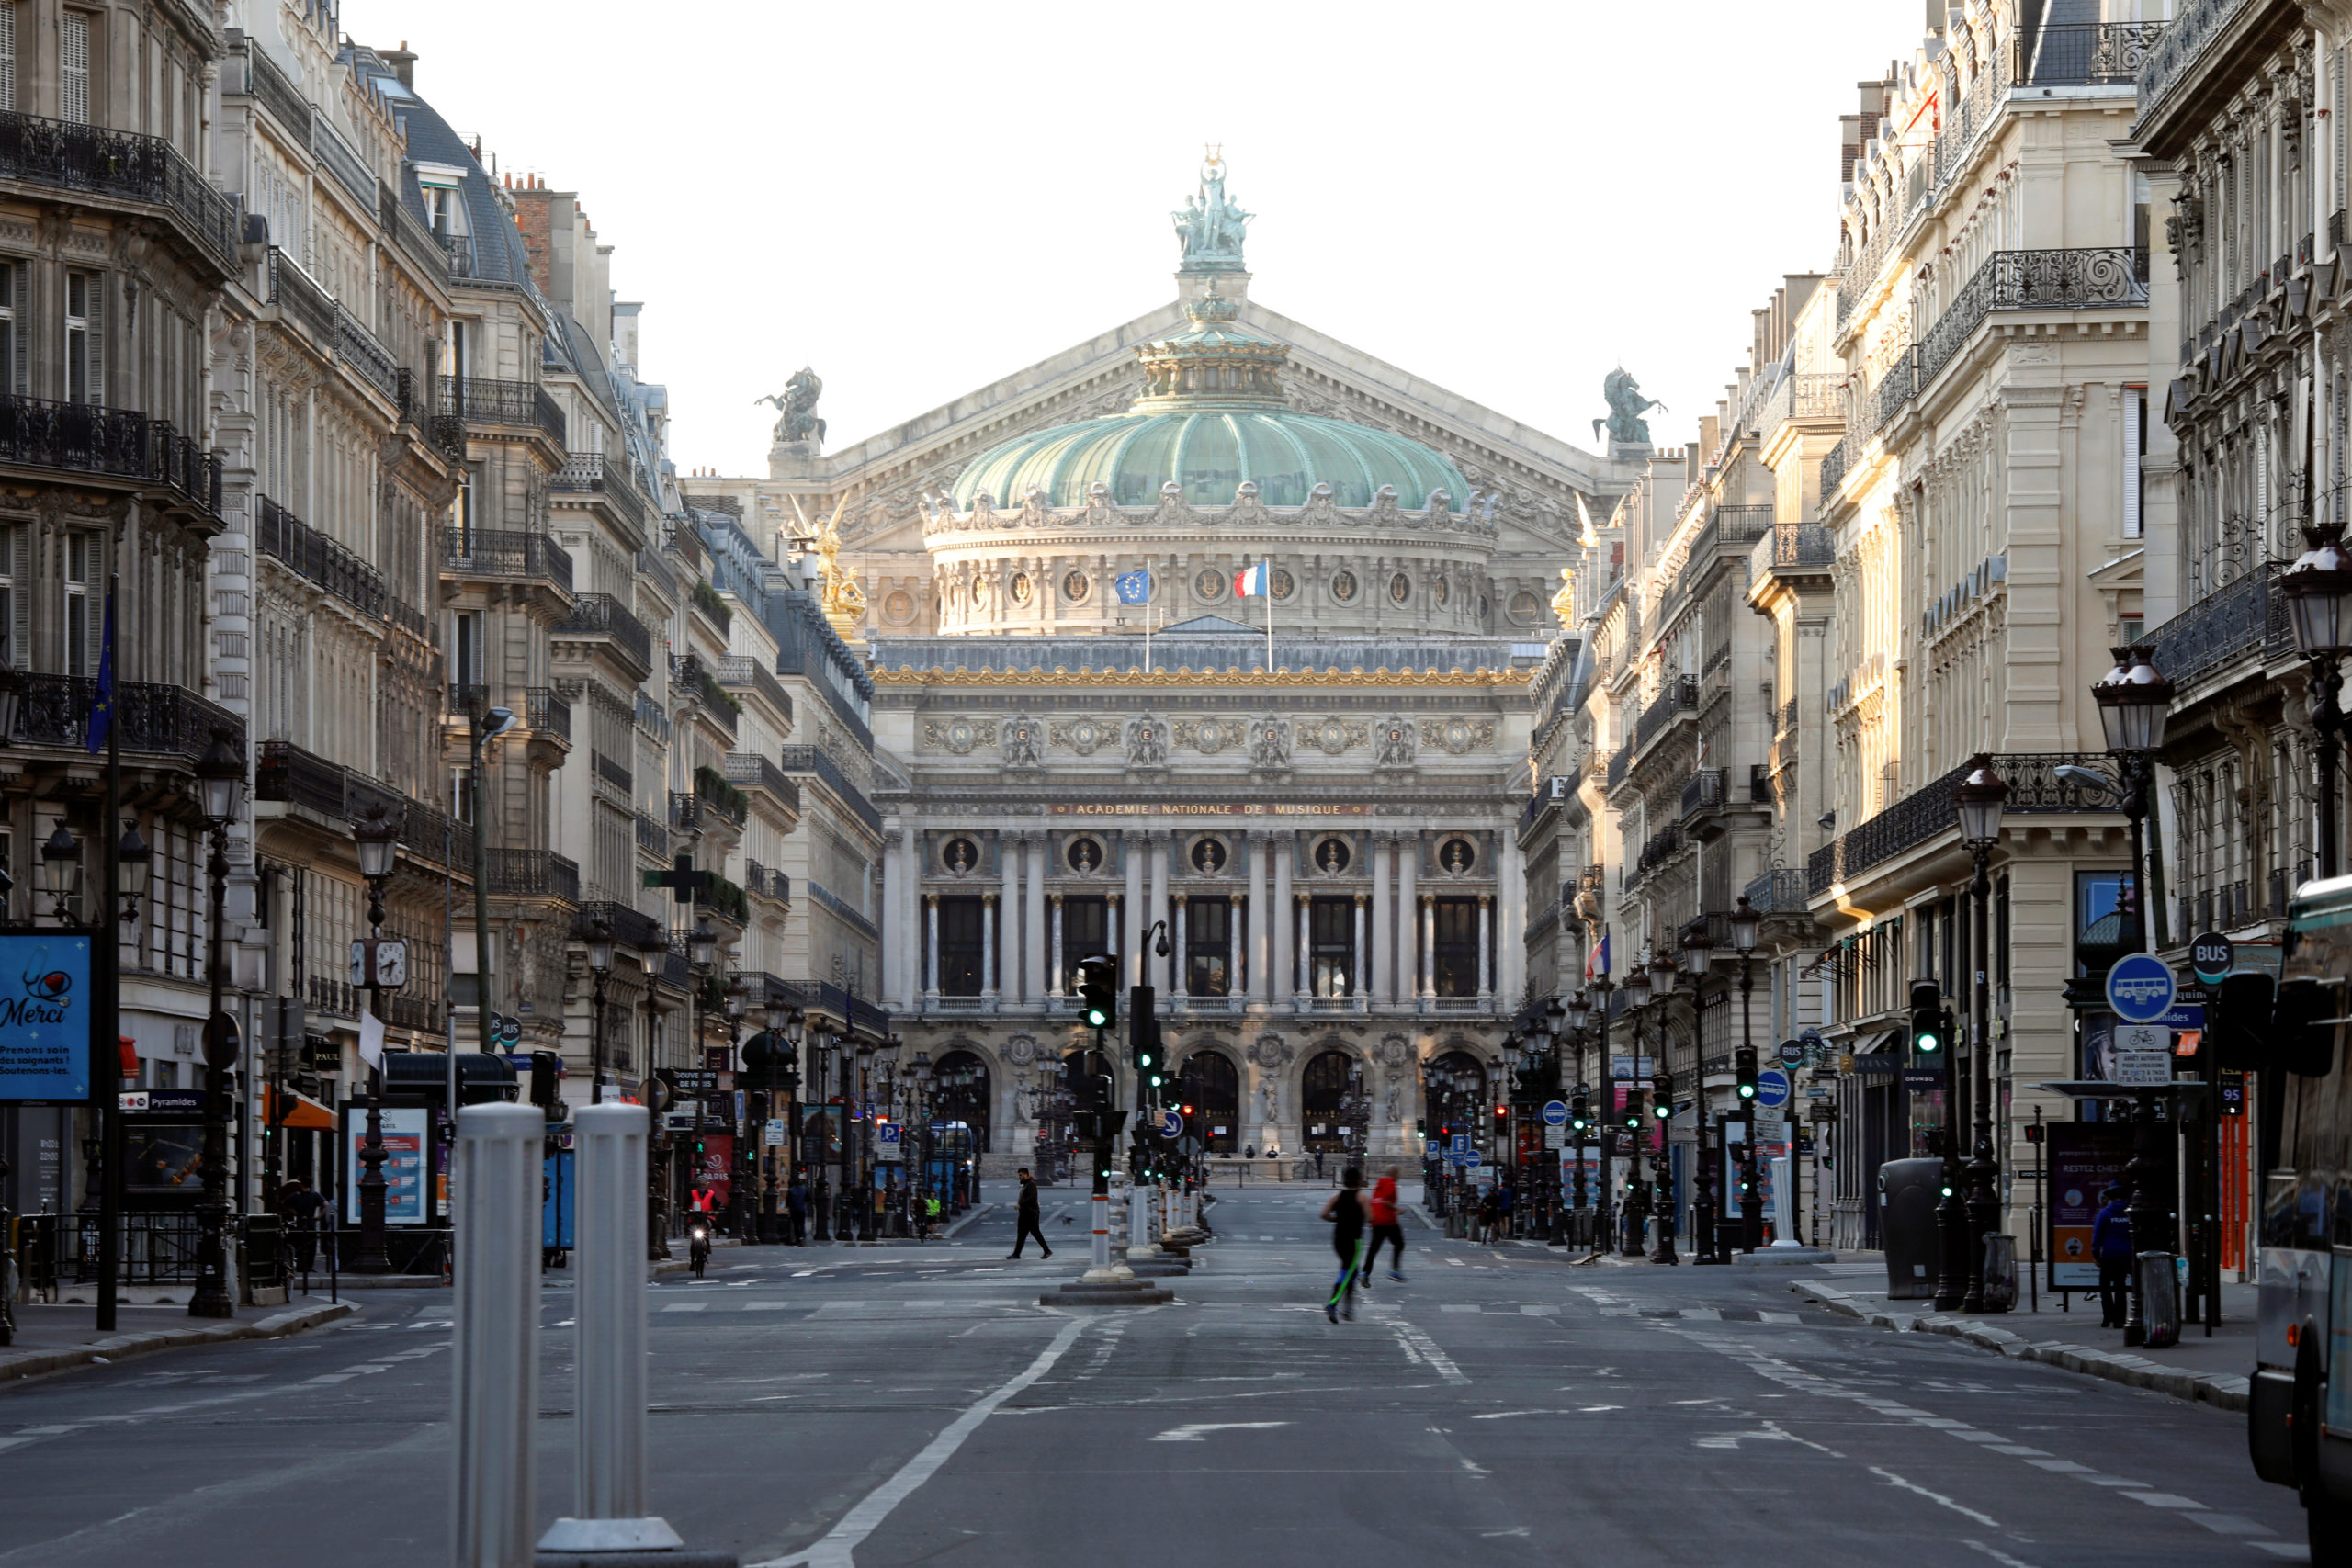 Rassemblements à Paris: La préfecture ordonne la fermeture de certains commerces samedi